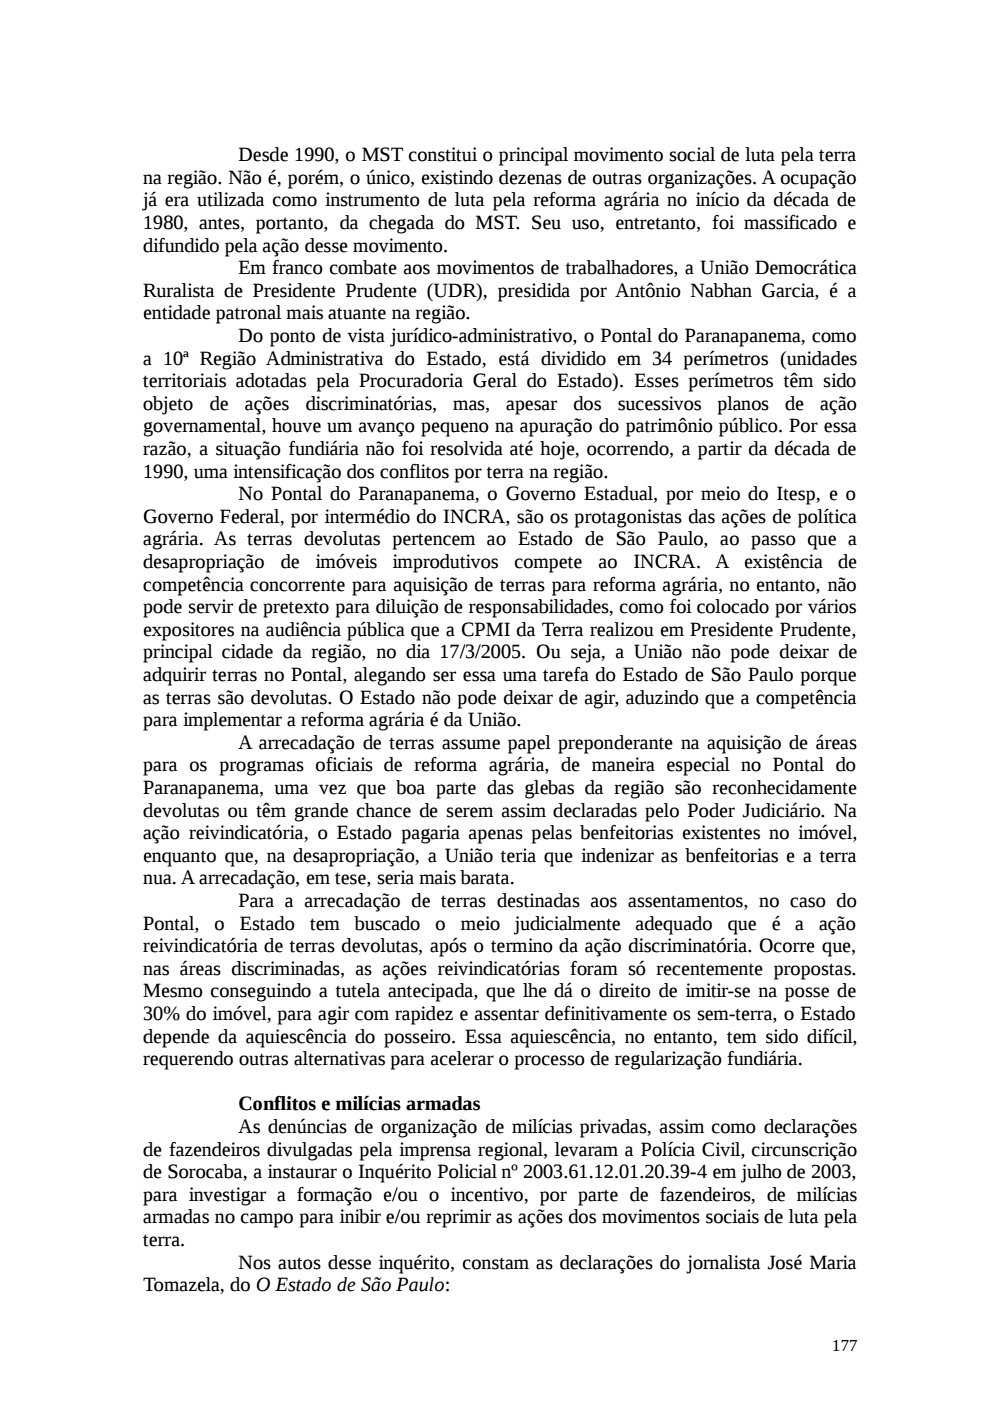 Page 177 from Relatório final da comissão